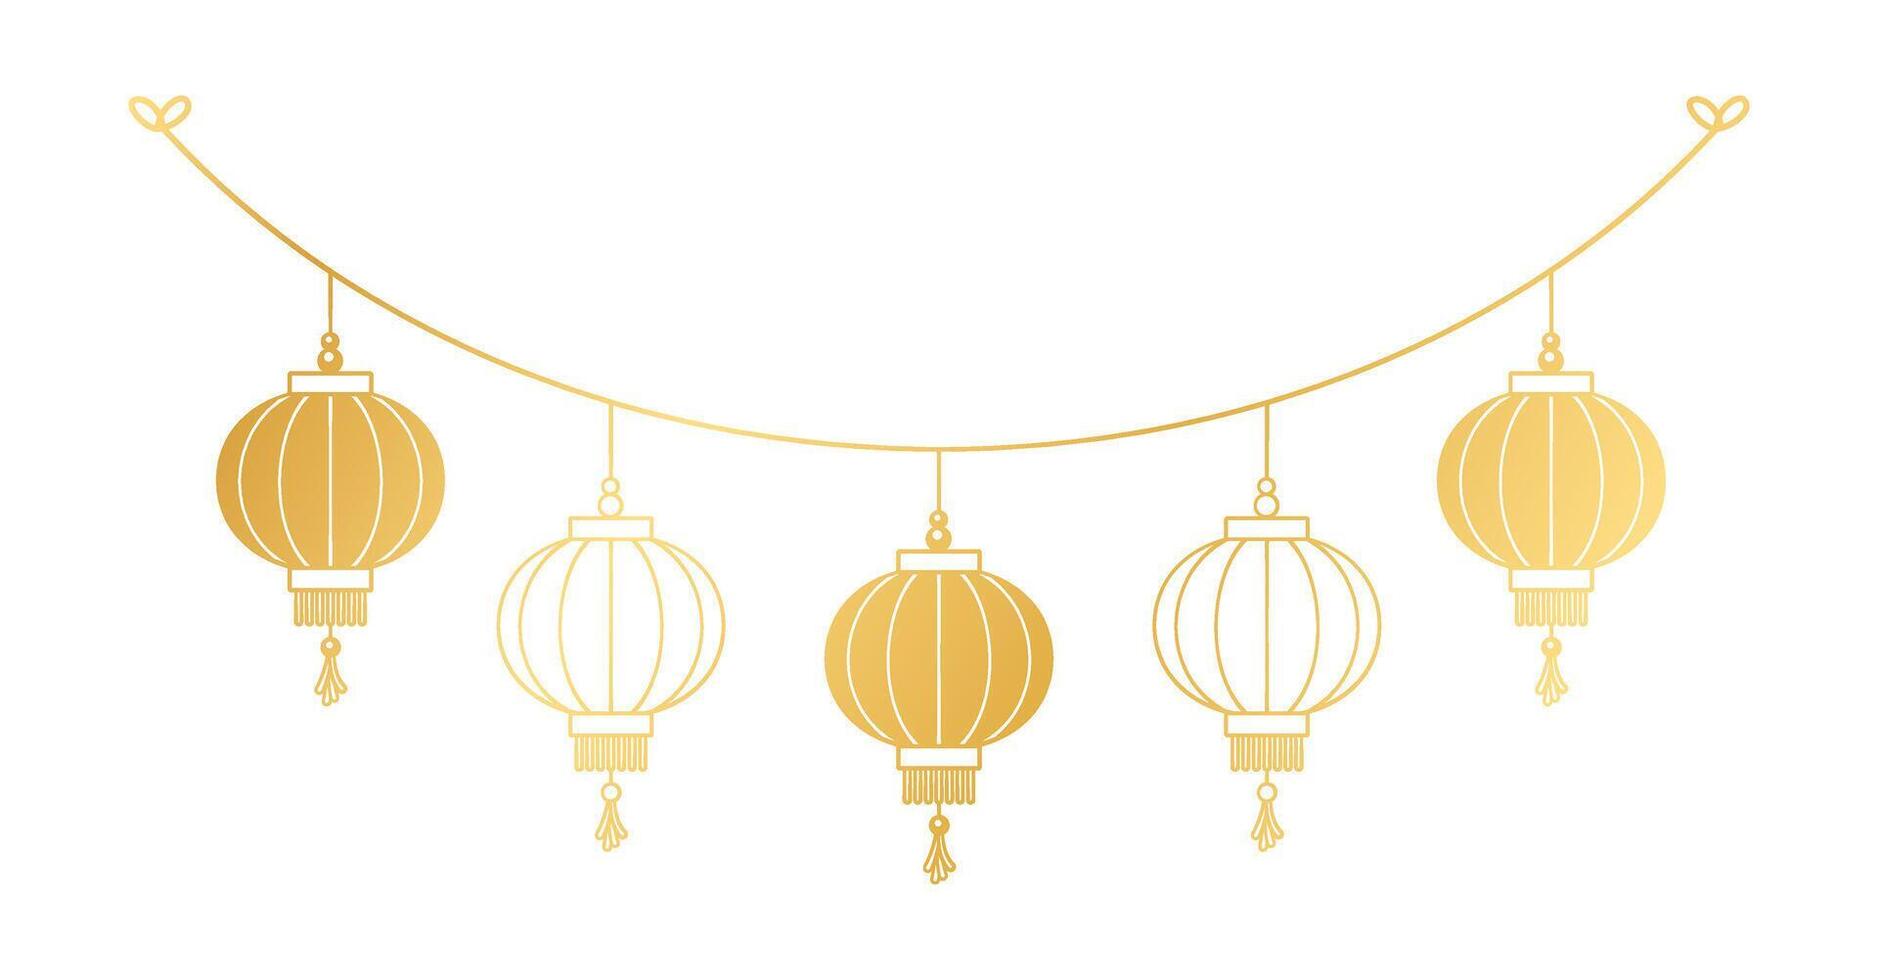 oro chino linterna colgando guirnalda silueta, lunar nuevo año y mediados de otoño festival decoración gráfico vector